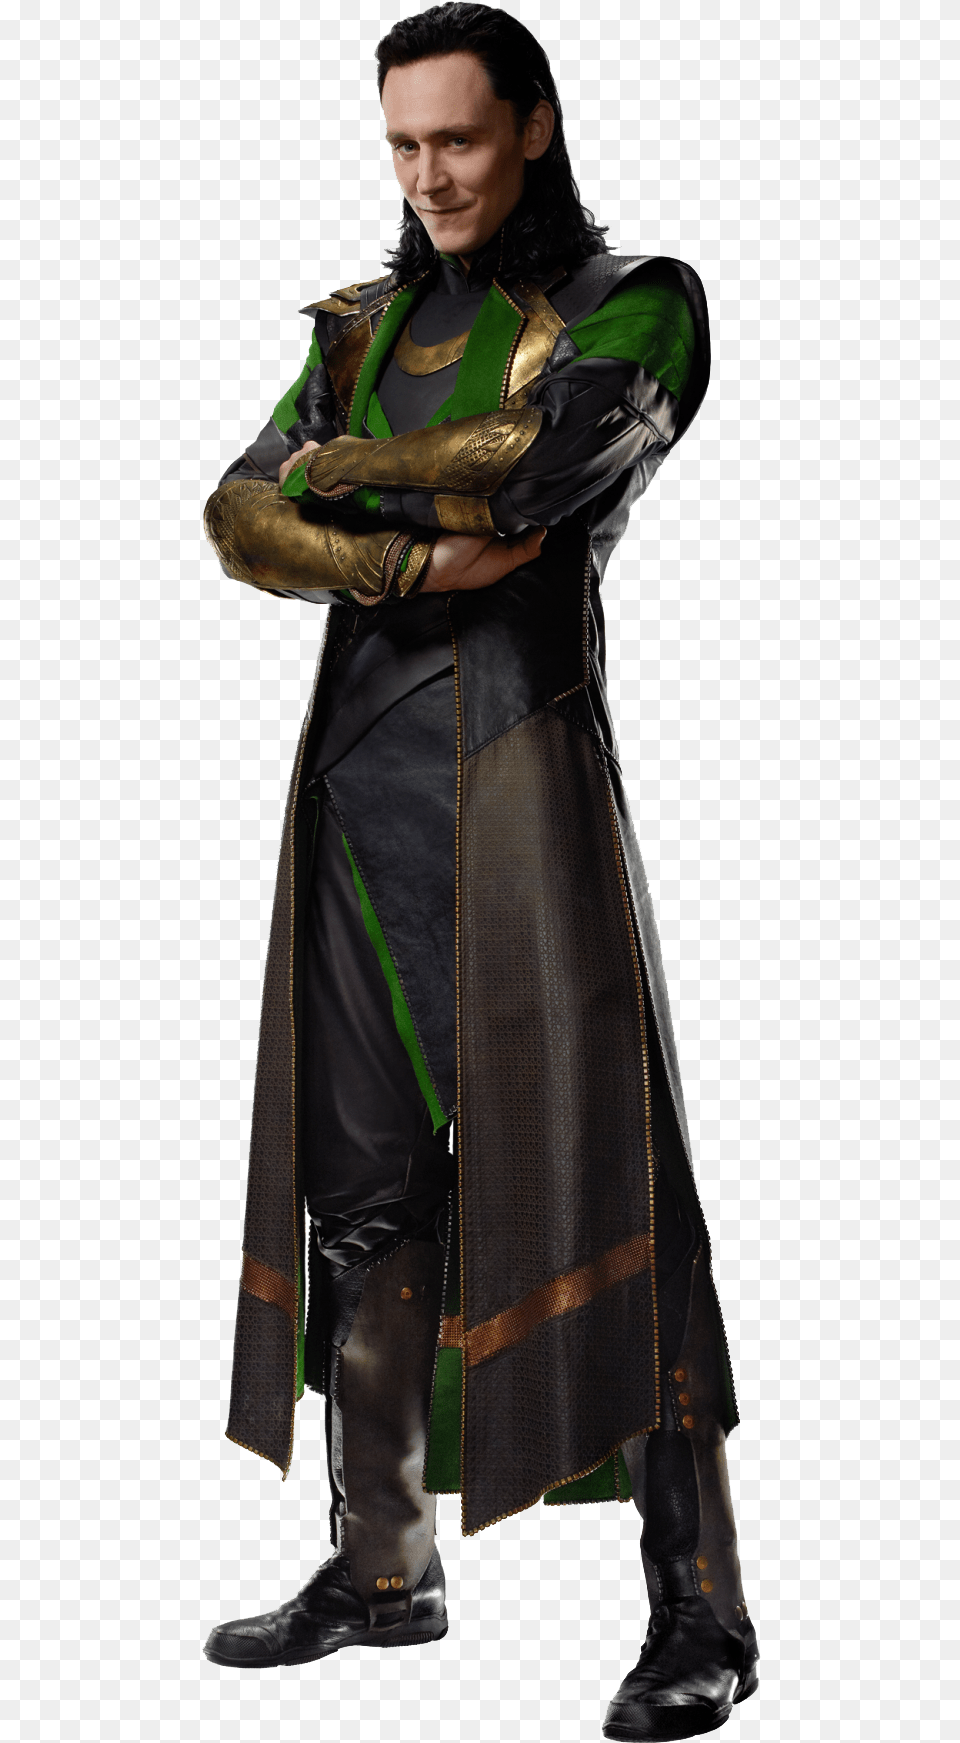 Loki Odin Thor Frigga Laufey Loki Is A Teenager, Clothing, Coat, Adult, Costume Png Image